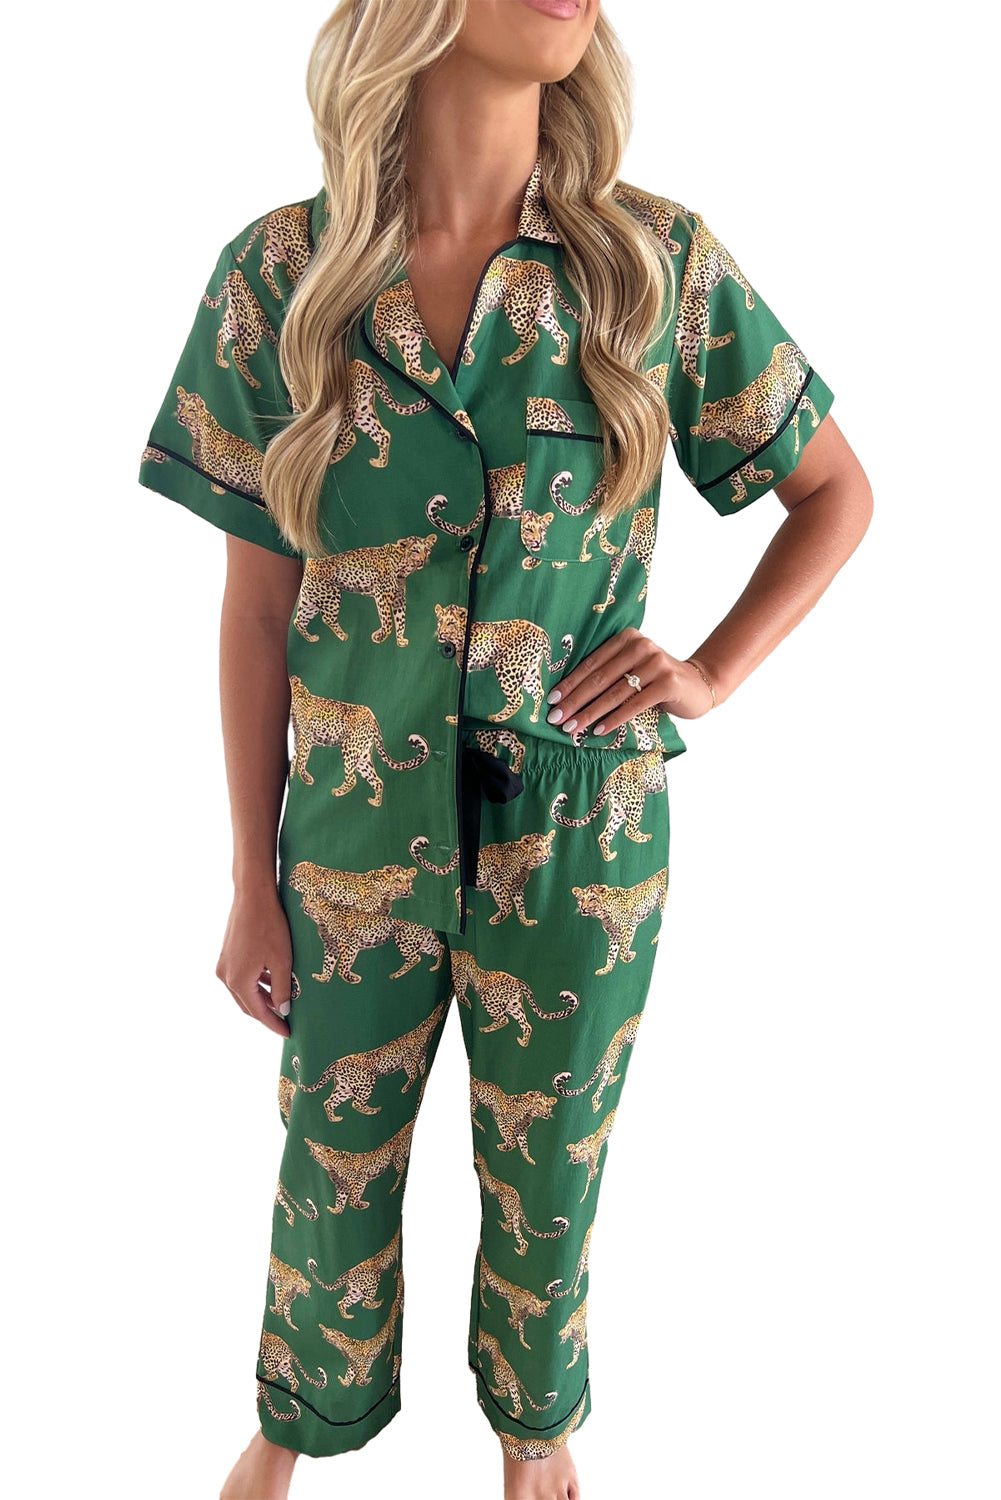 Green Cheetah Print Short Sleeve Shirt and Pants Pajama Set